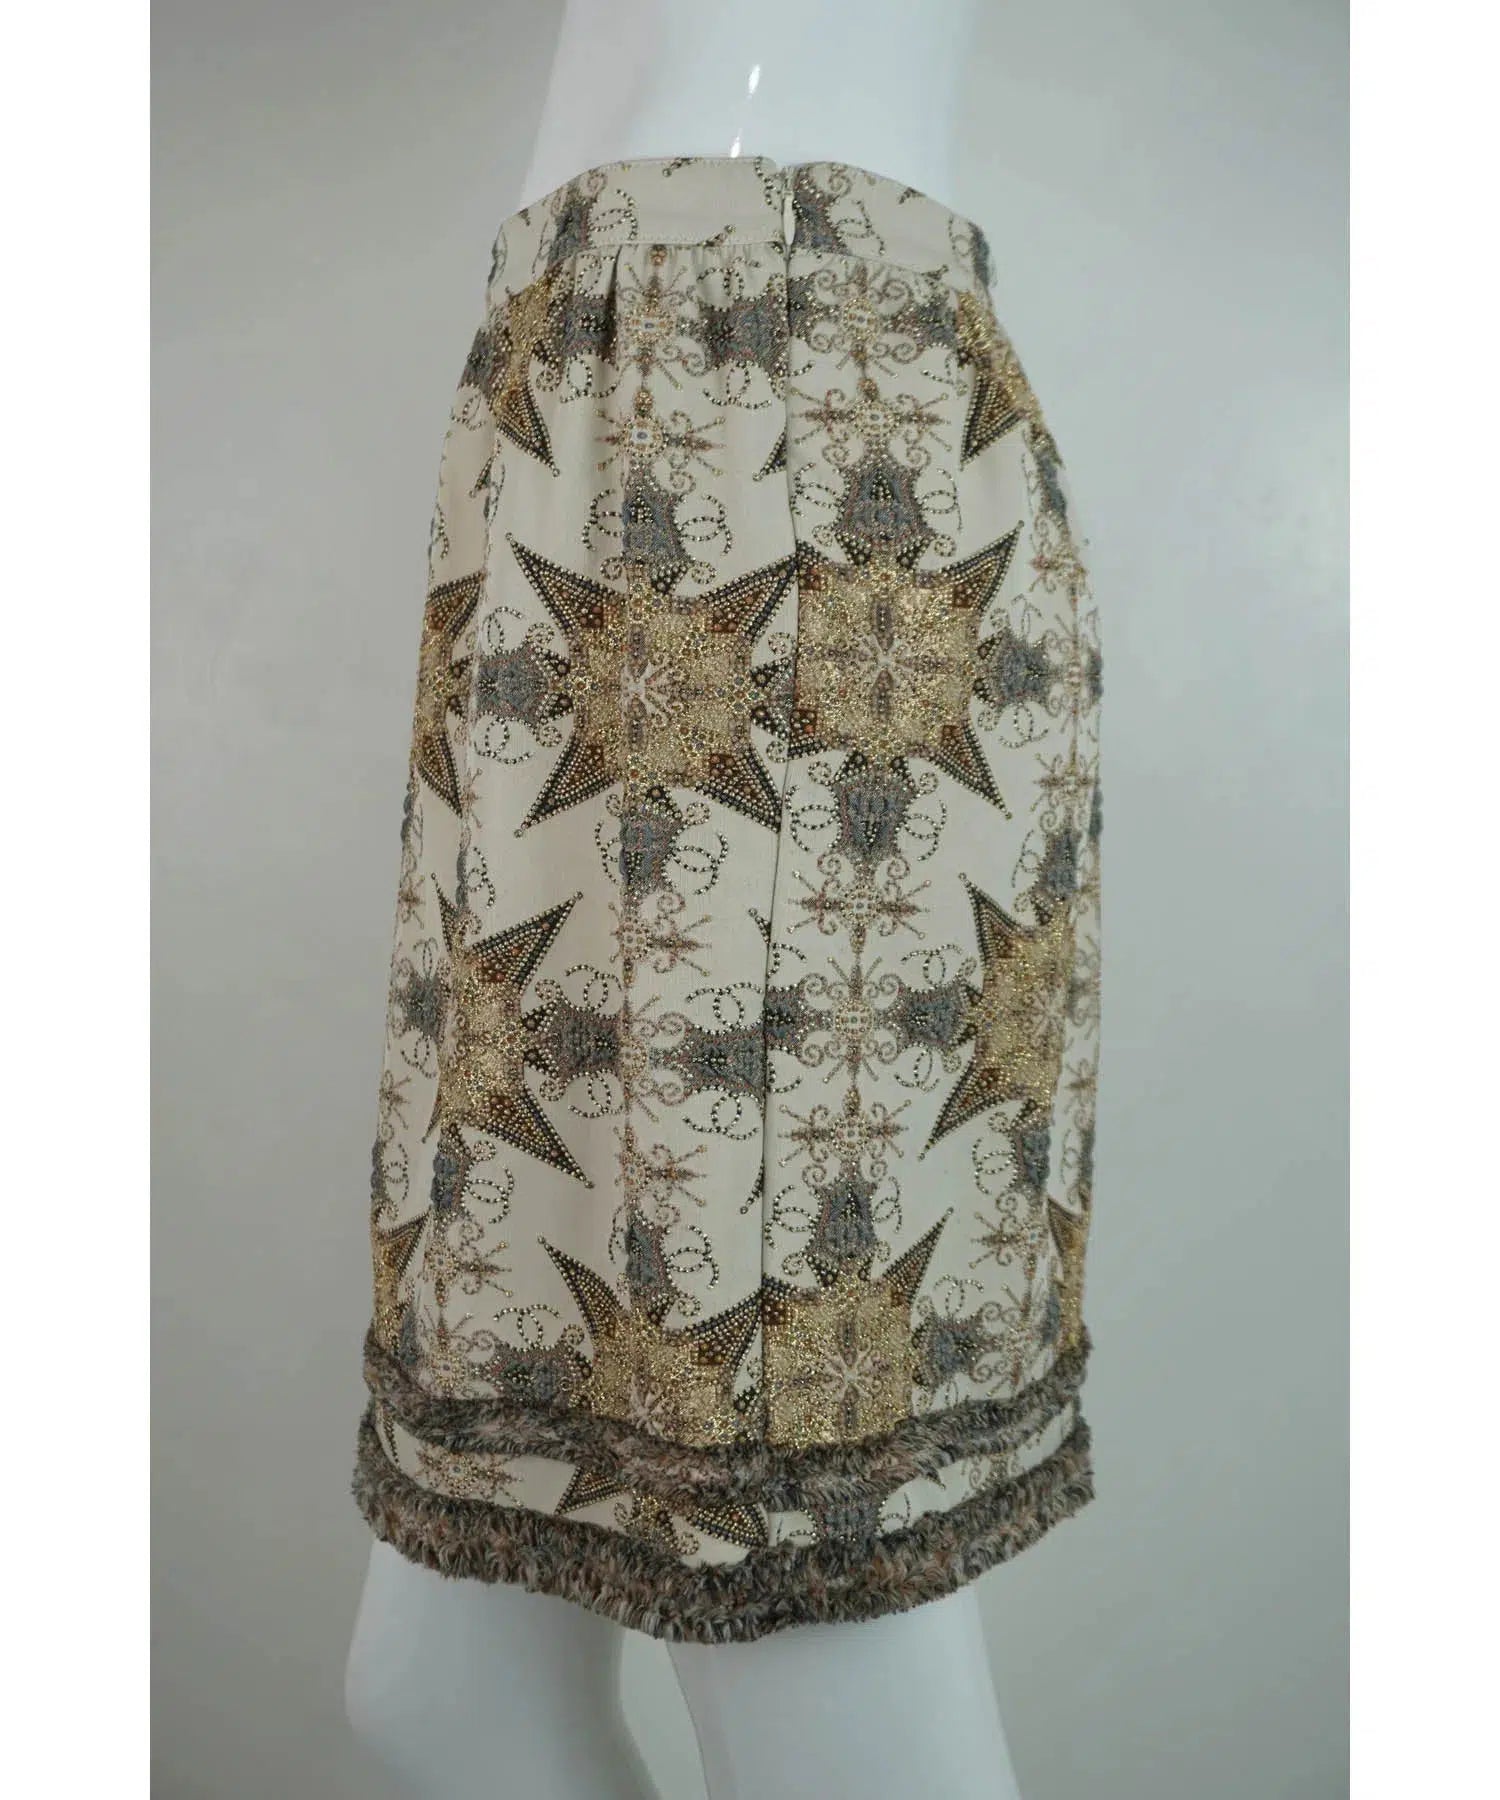 Chanel Embellished Skirt 40/8